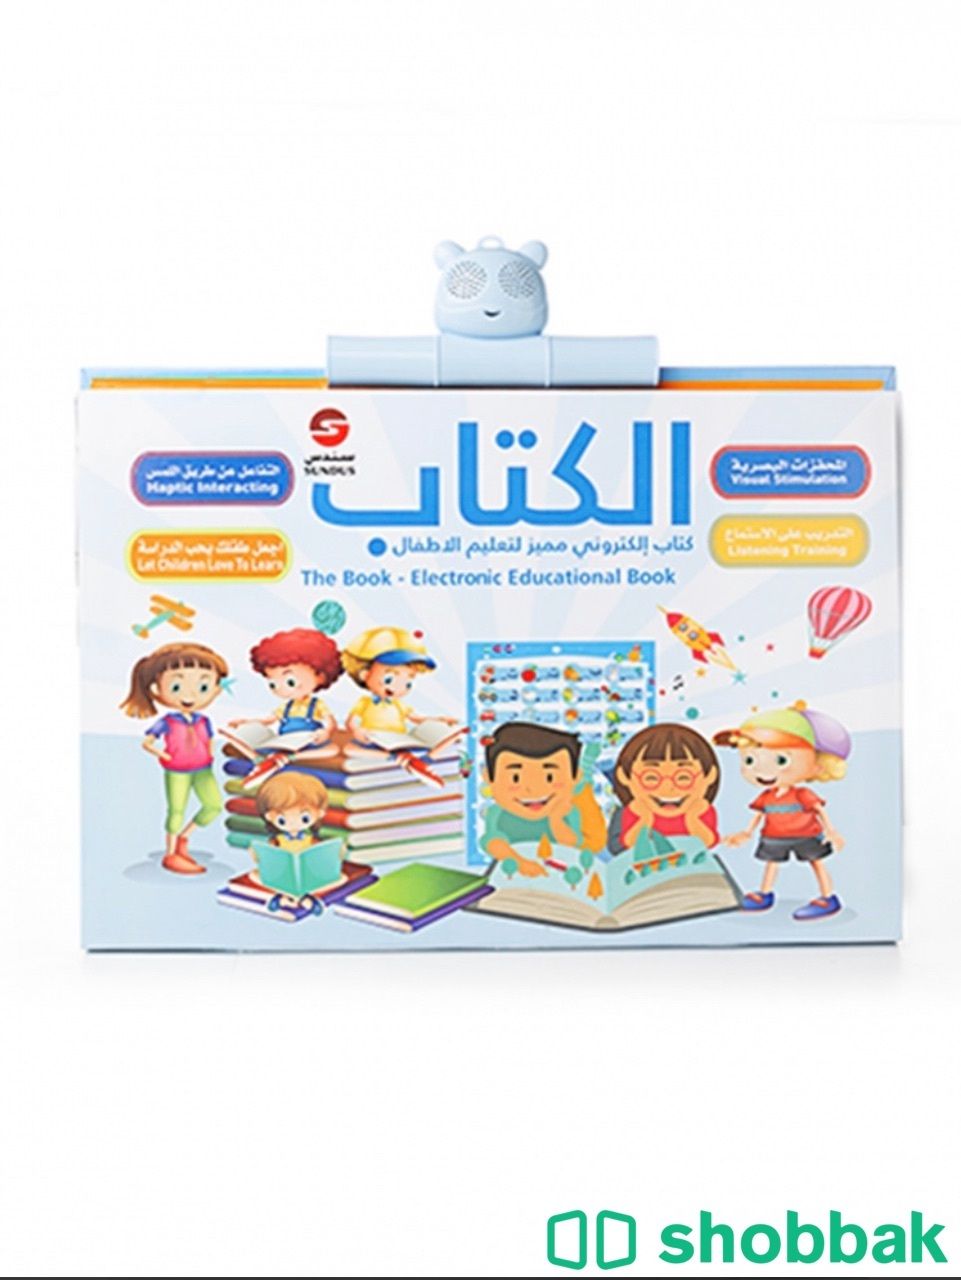 الكتاب المميز الكتروني لتعليم الاطفال Shobbak Saudi Arabia